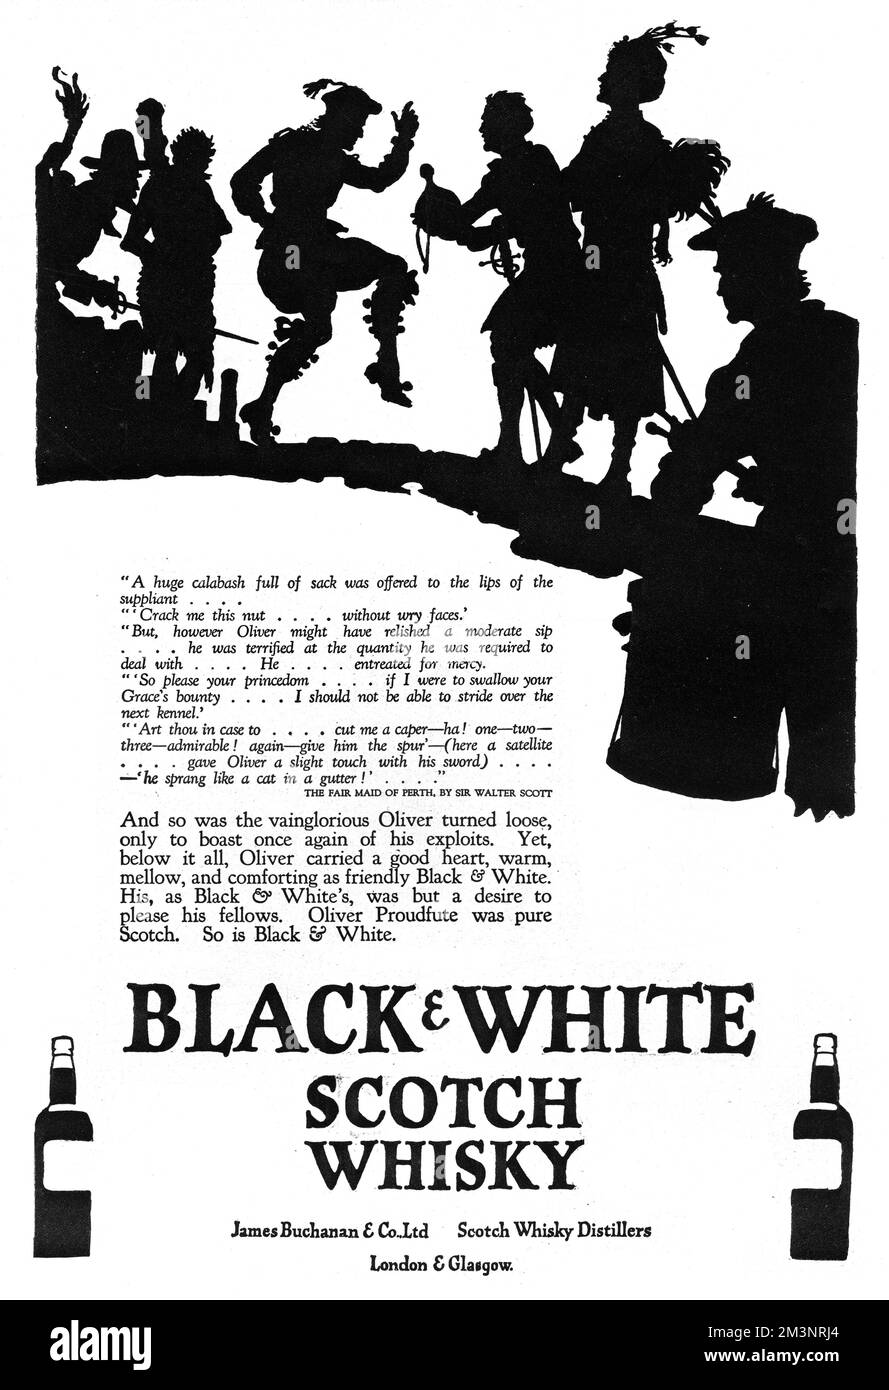 Publicité pour Black & amp; White Scotch Whisky, avec une belle silhouette représentant un Oliver Proudfute dansant et une citation de « The Fair Maid of Perth » de Sir Walter Scott. Date: 1927 Banque D'Images